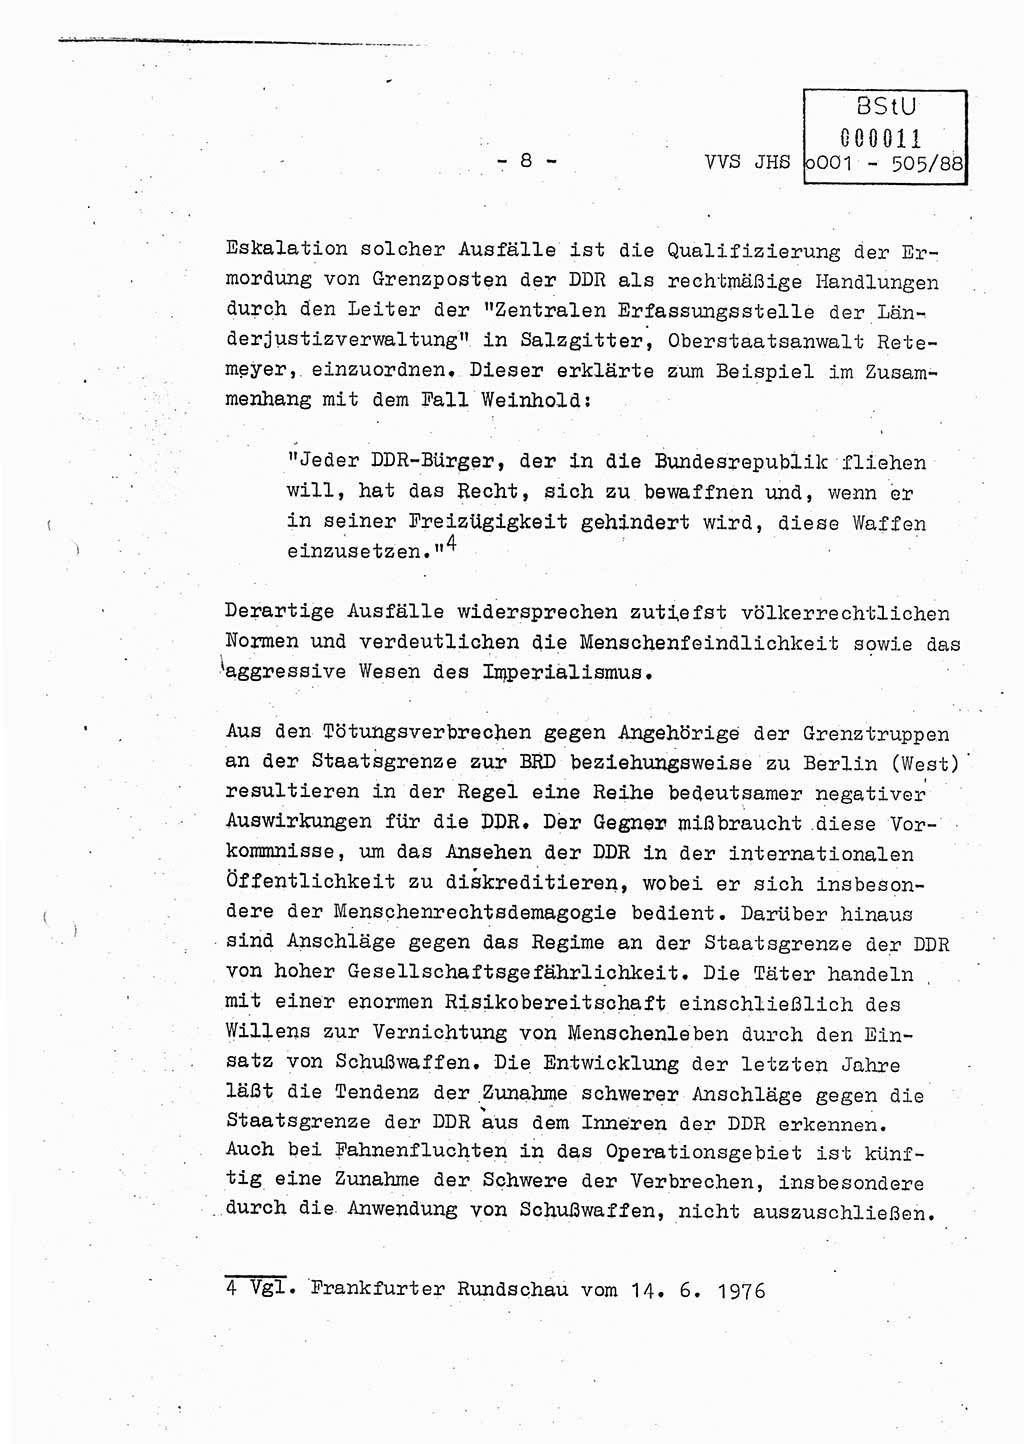 Diplomarbeit Leutnant Frank Schulze (HA Ⅸ/9), Ministerium für Staatssicherheit (MfS) [Deutsche Demokratische Republik (DDR)], Juristische Hochschule (JHS), Vertrauliche Verschlußsache (VVS) o001-505/88, Potsdam 1988, Seite 8 (Dipl.-Arb. MfS DDR JHS VVS o001-505/88 1988, S. 8)